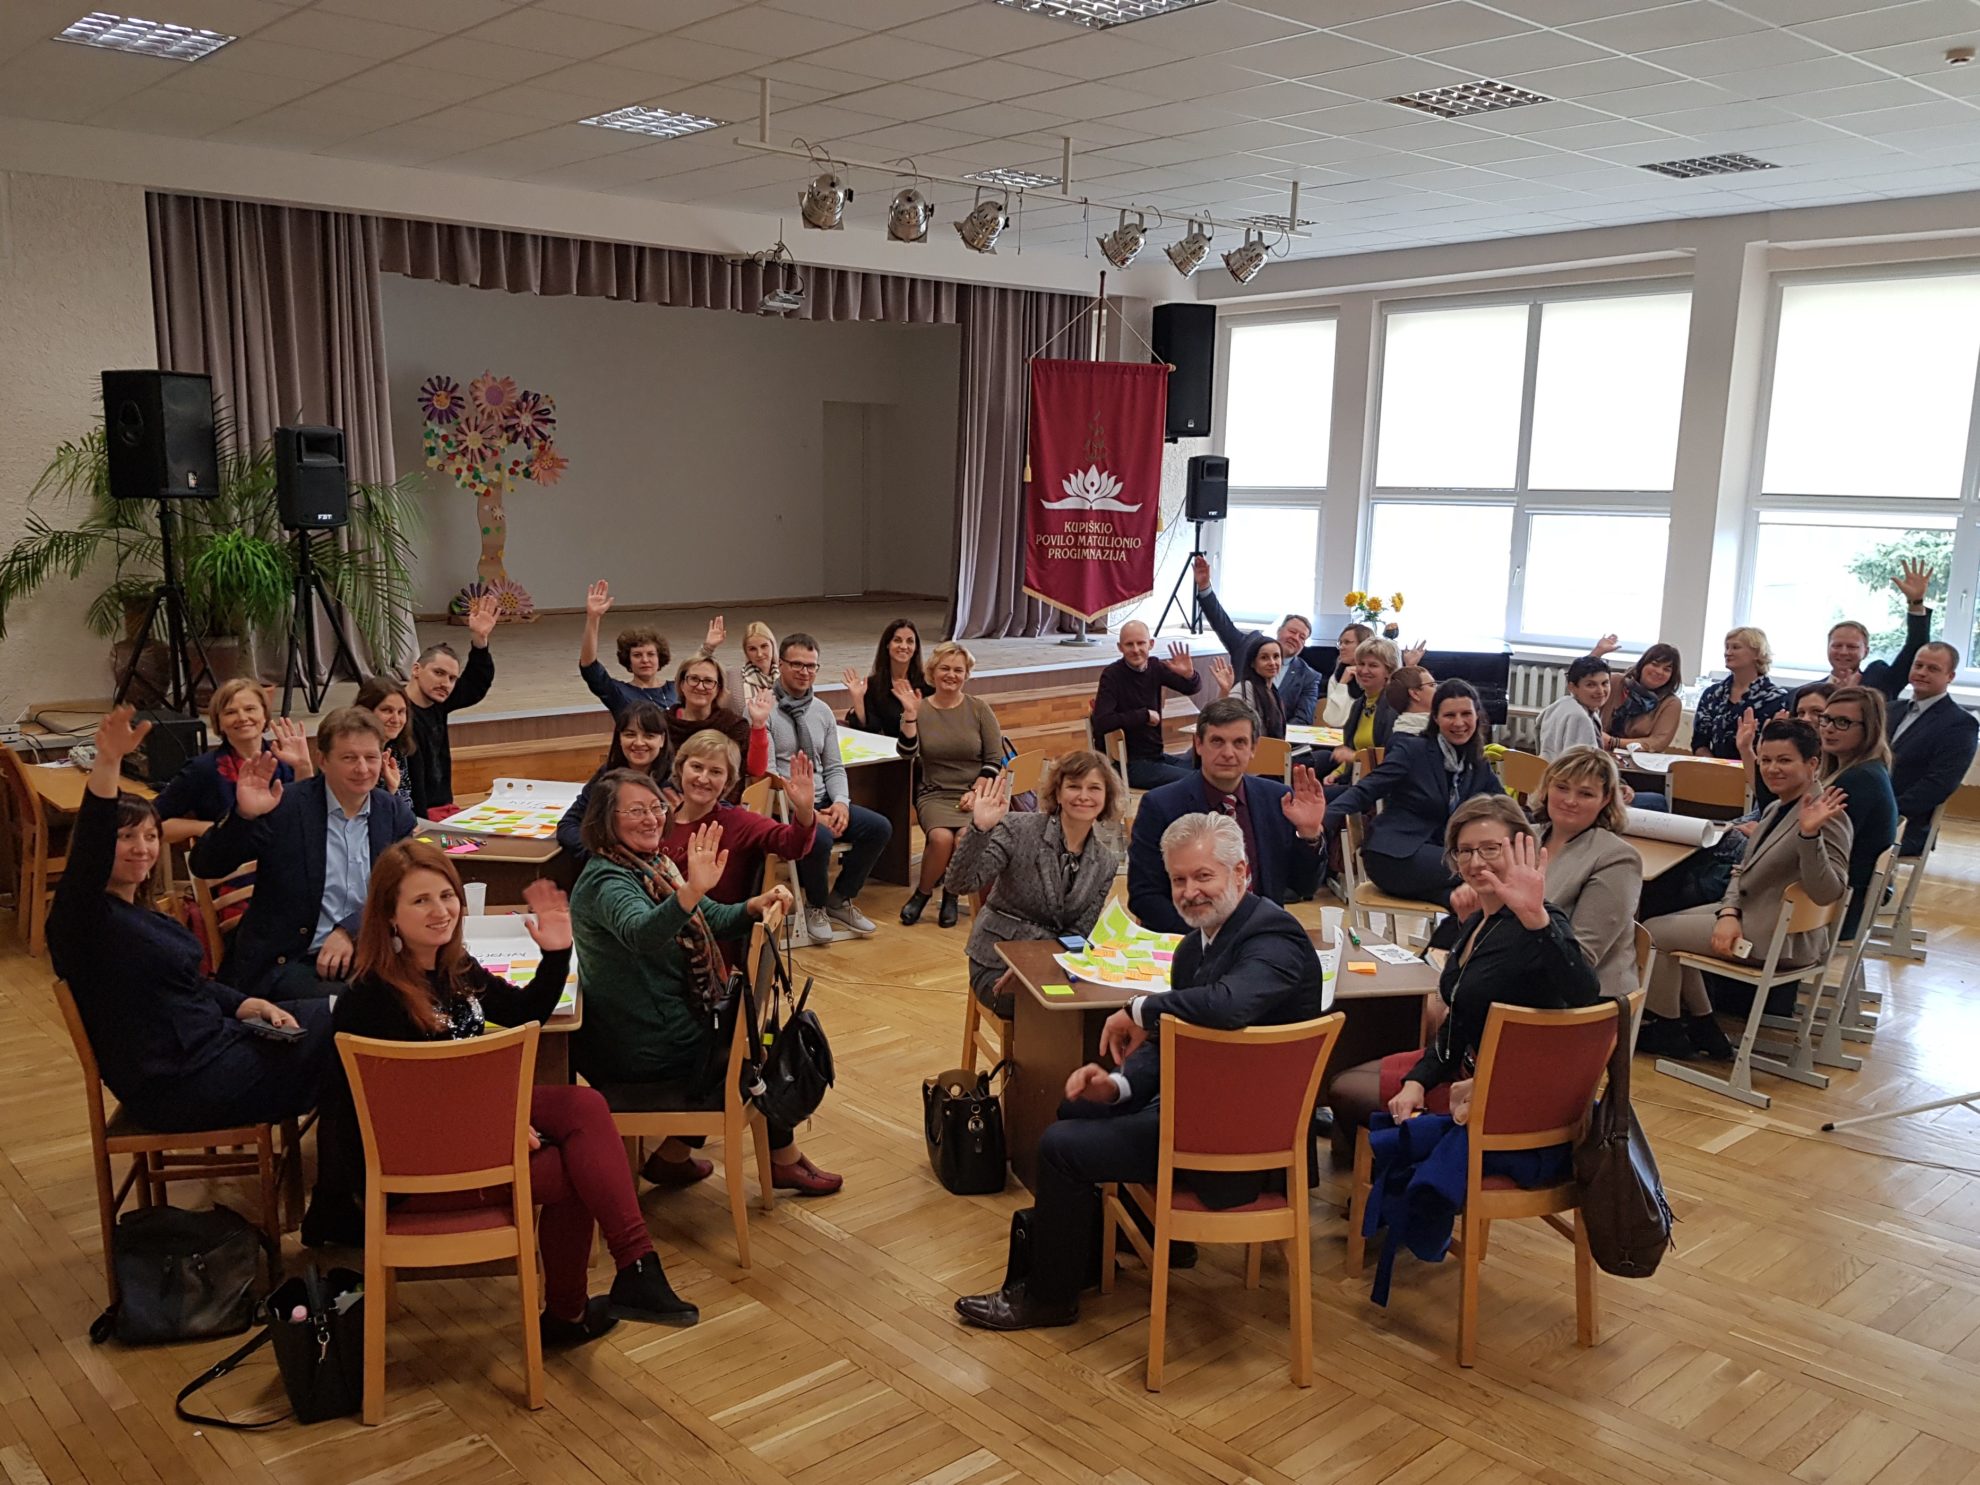 Panevėžio regiono švietimo darbuotojai susitiko Kupiškyje, kur ieškojo būdų stiprinti STEAM ugdymą regione. Susitikime dalyvavo apskrities savivaldybių, mokyklų, profesinio ir aukštojo mokslo, neformaliojo ugdymo įstaigų, „Investuok Lietuvoje“ atstovai.